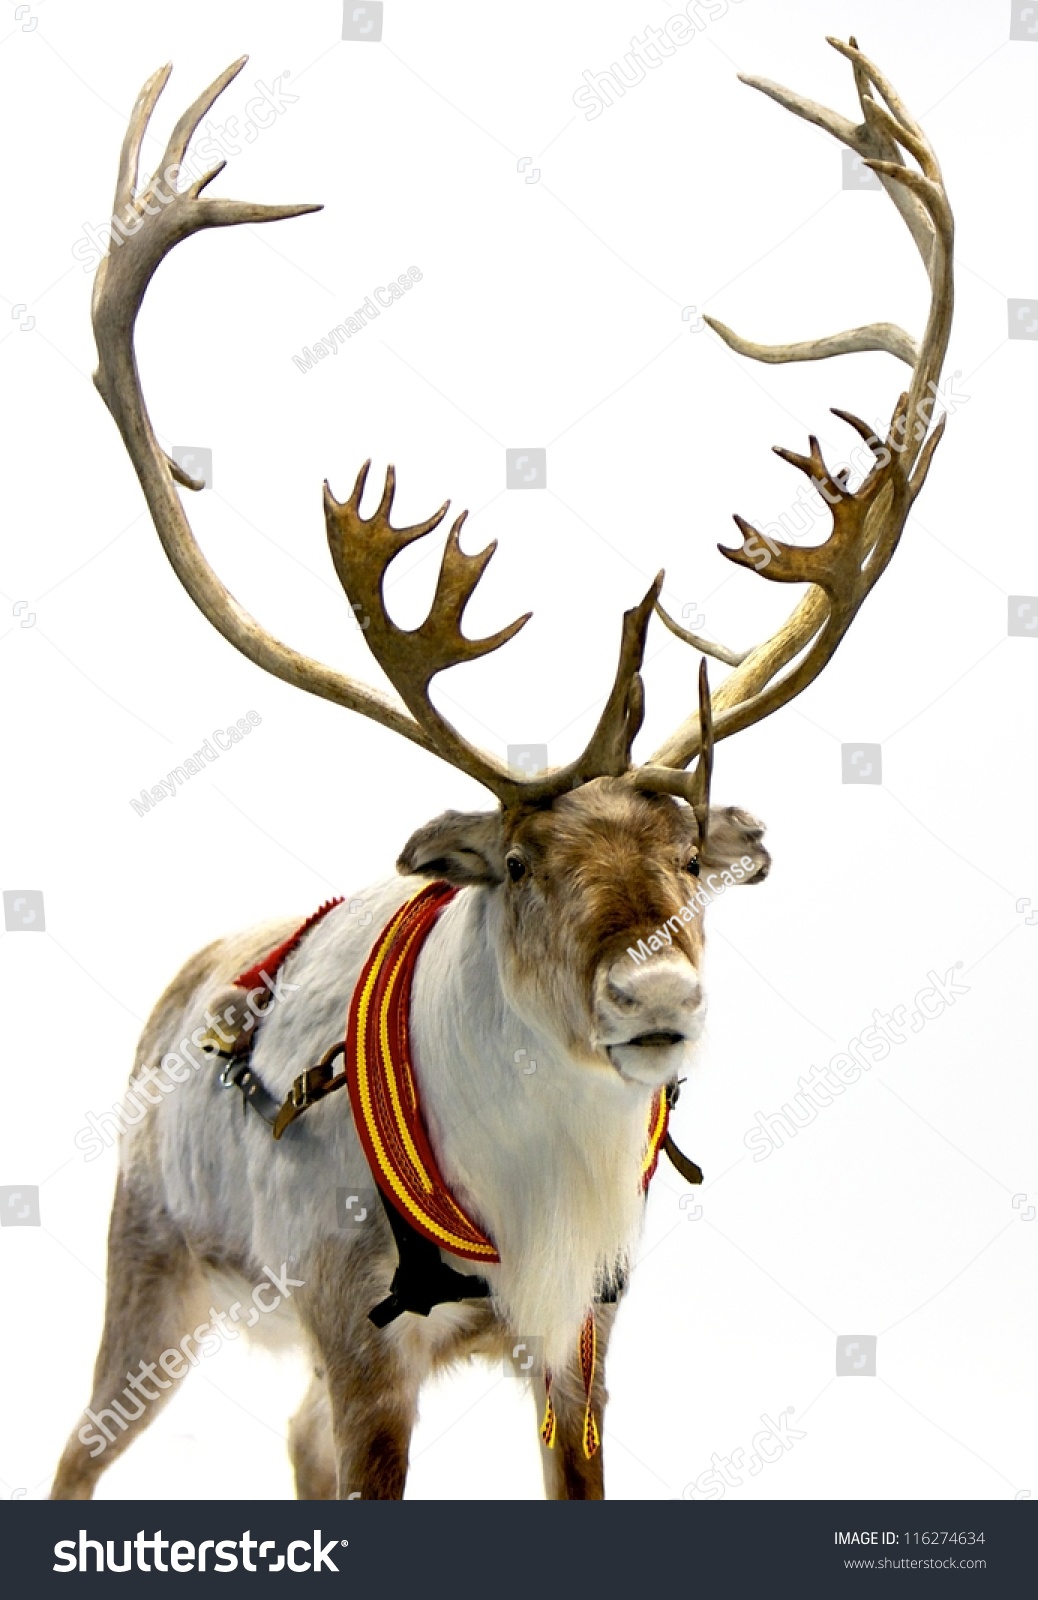 reindeer harness